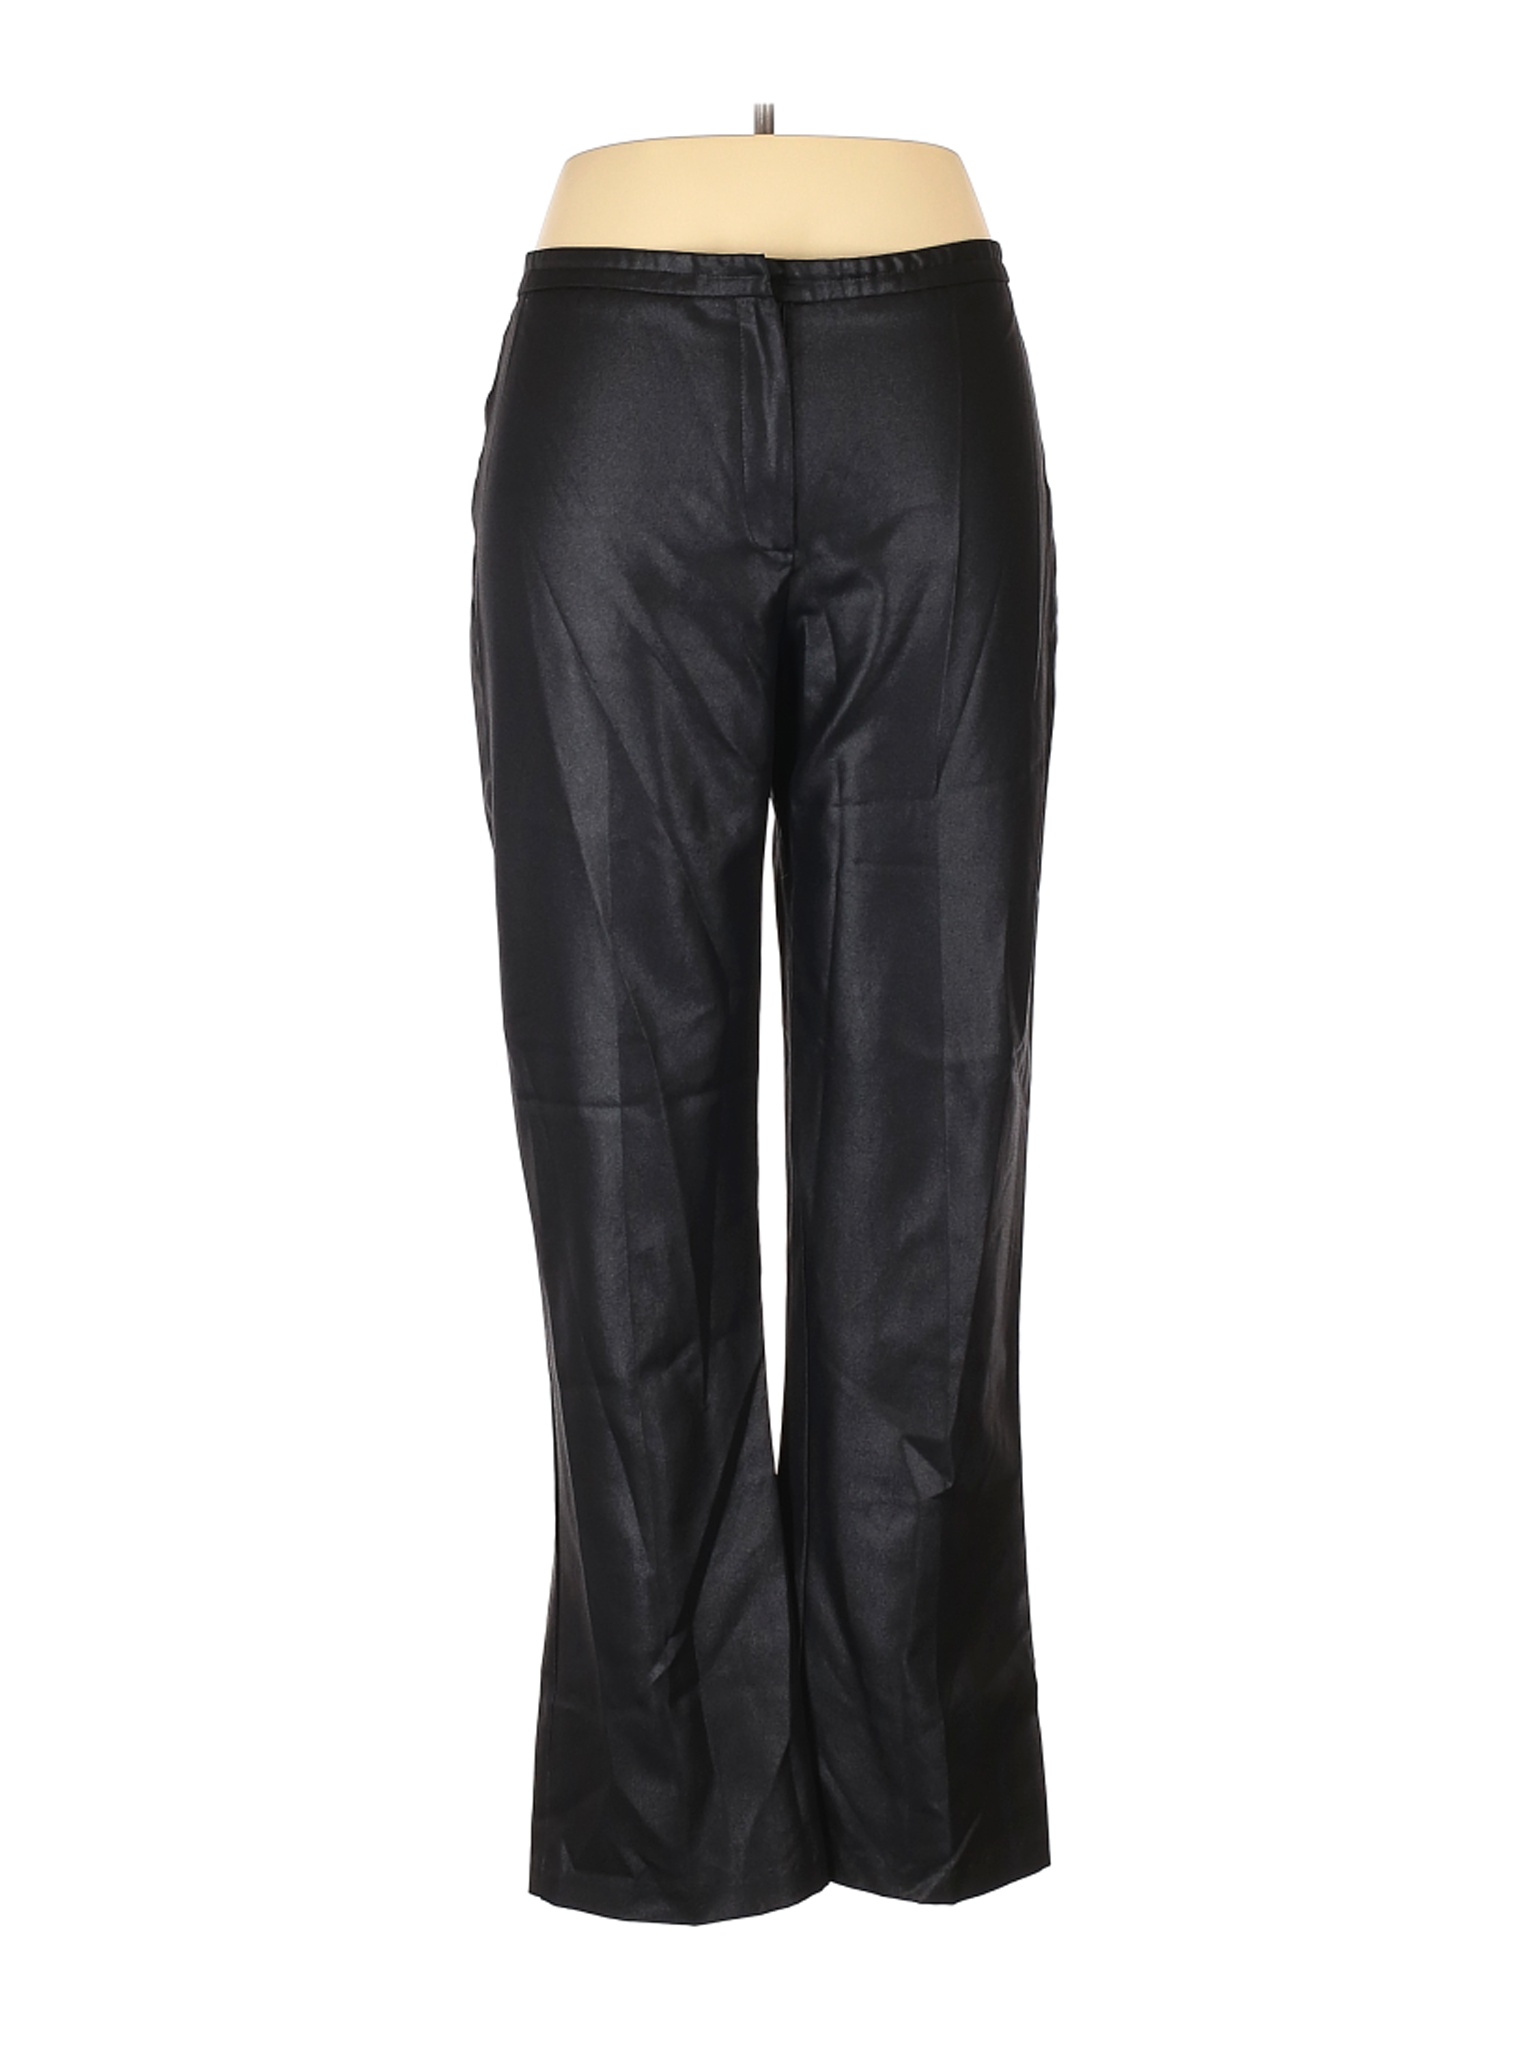 La Belle Women Black Dress Pants 13 | eBay